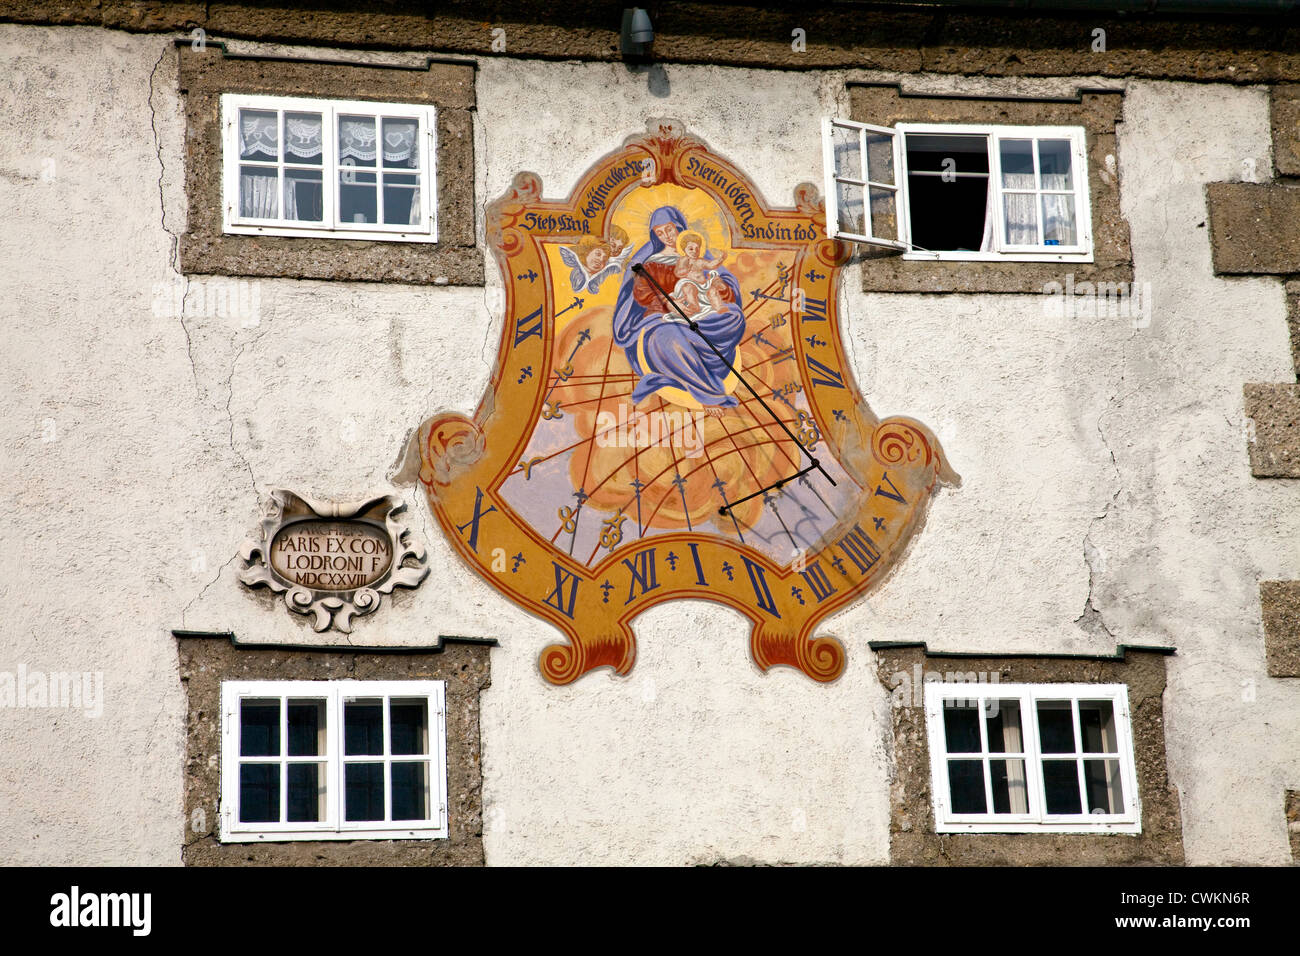 Salzbourg, Autriche : Cette sgrafitto peints cadran solaire illumine une porte de ville à Rudolfskai. Banque D'Images